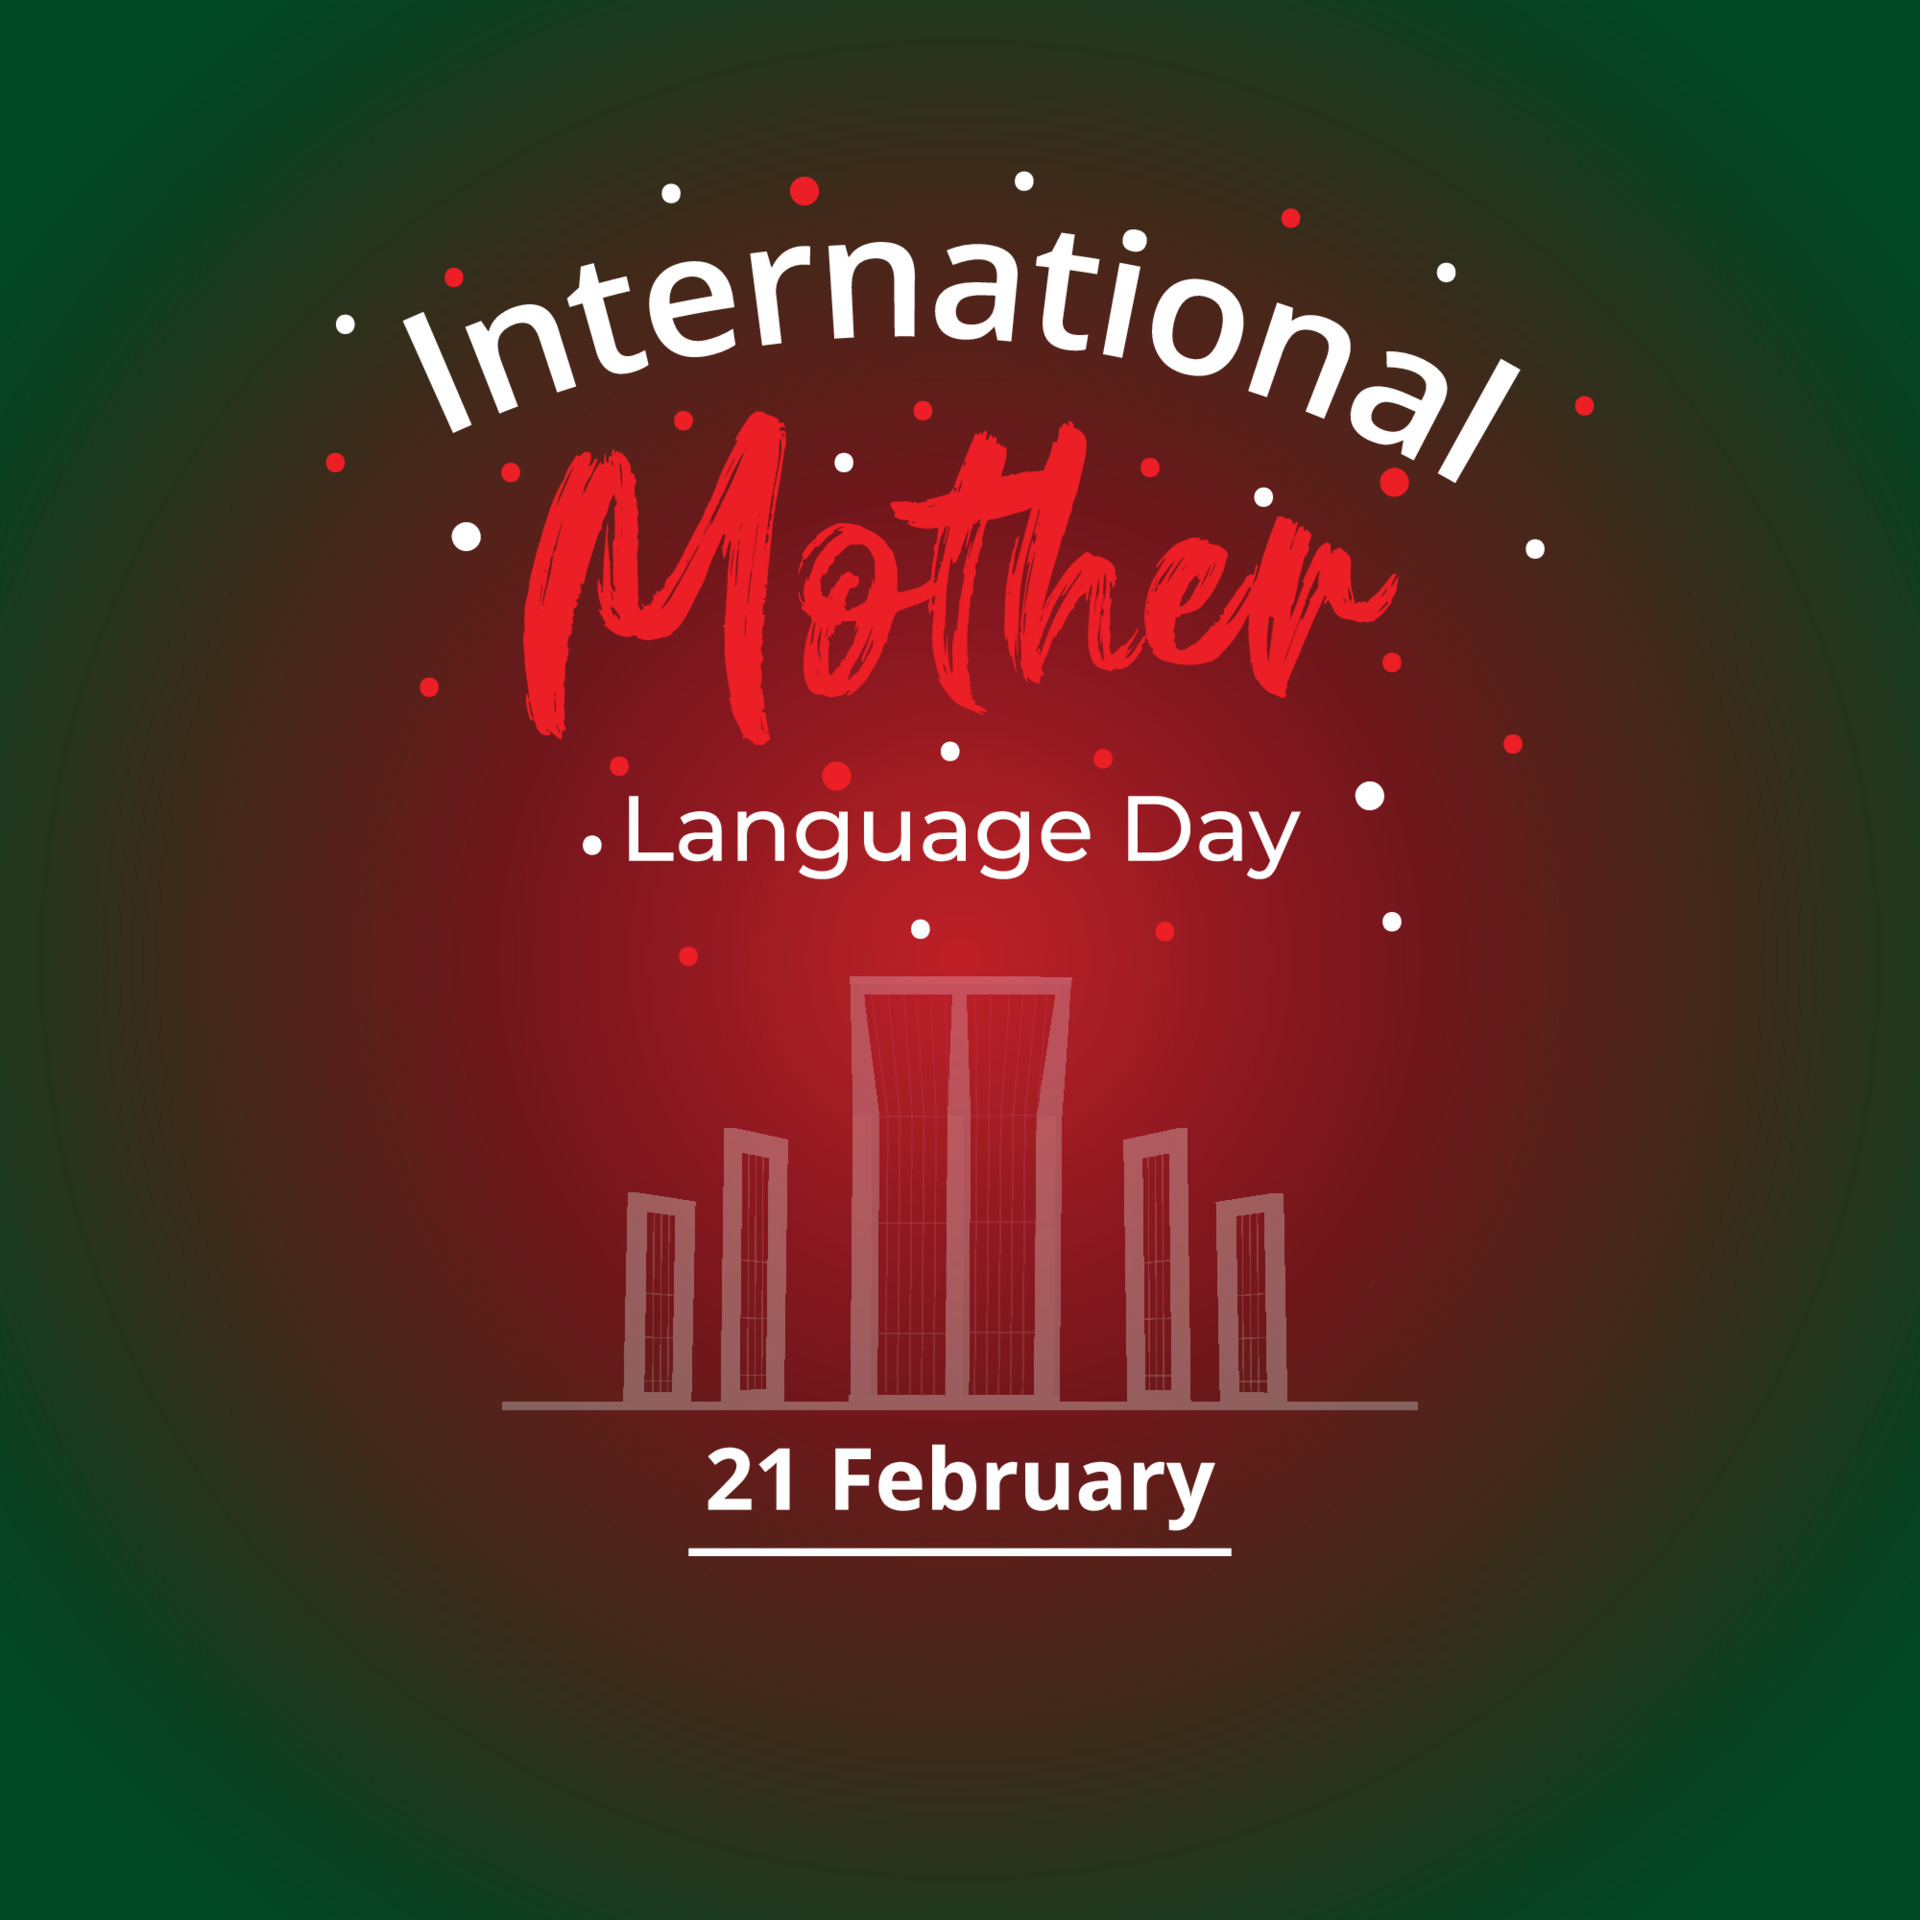 Ngày Ngôn ngữ Mẹ đẻ Quốc tế 21 tháng 2 đã được tổ chức tại Bangladesh với sự tham gia của nhiều quốc gia trên thế giới. Cùng xem những hình ảnh về ngày hội này, biết thêm về nền văn hóa đặc trưng của Bangladesh và cảm nhận tinh hoa của các ngôn ngữ trên thế giới.